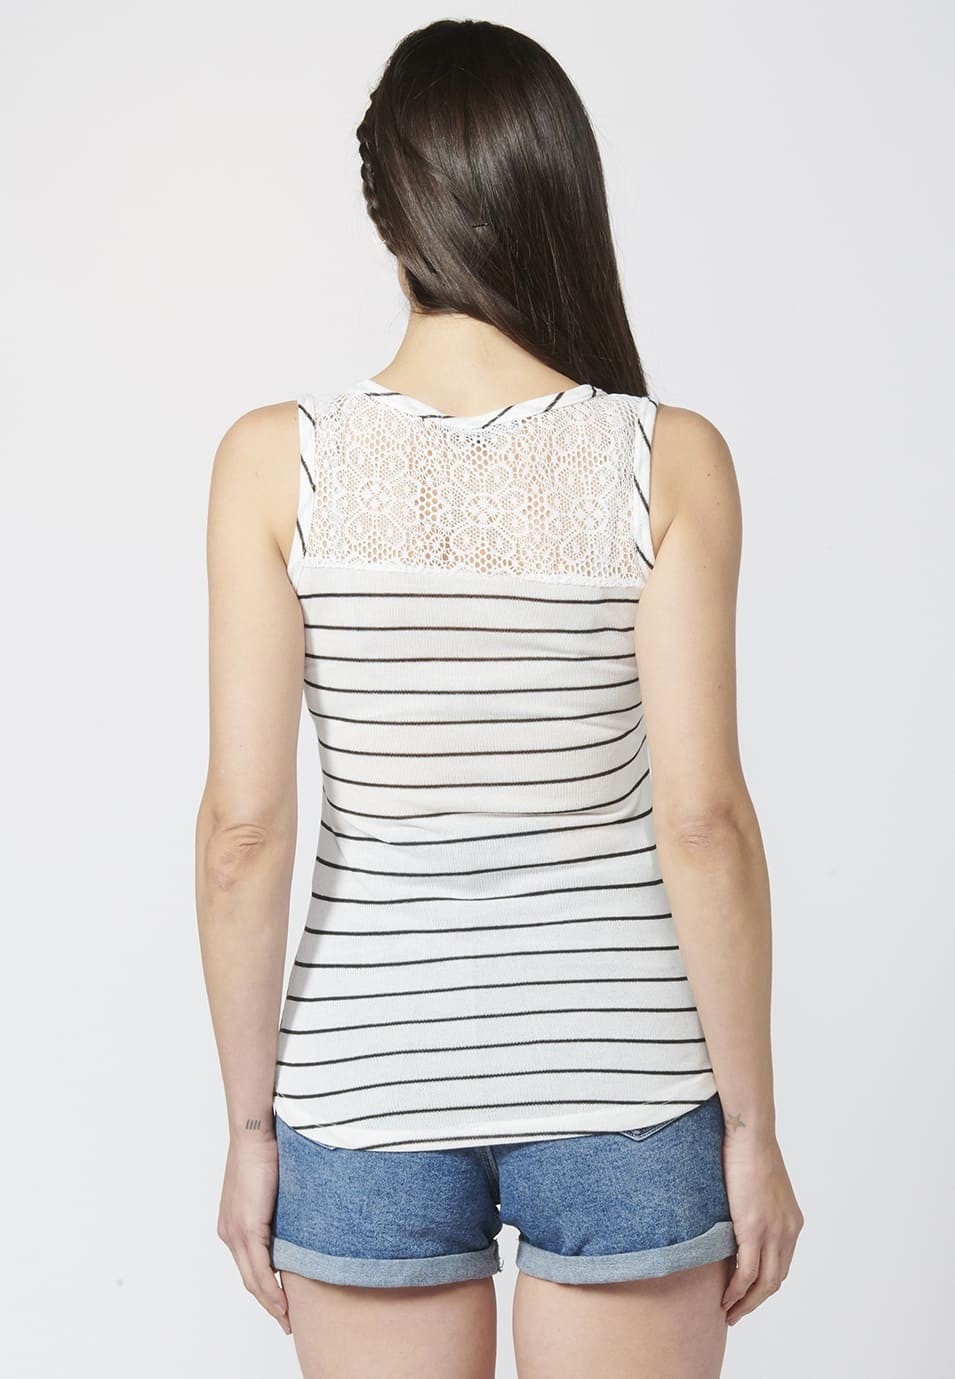 Camiseta Top tirantes con Escote Redondo y Encaje de Punto con Estampado Floral para Mujer color Blanco 2